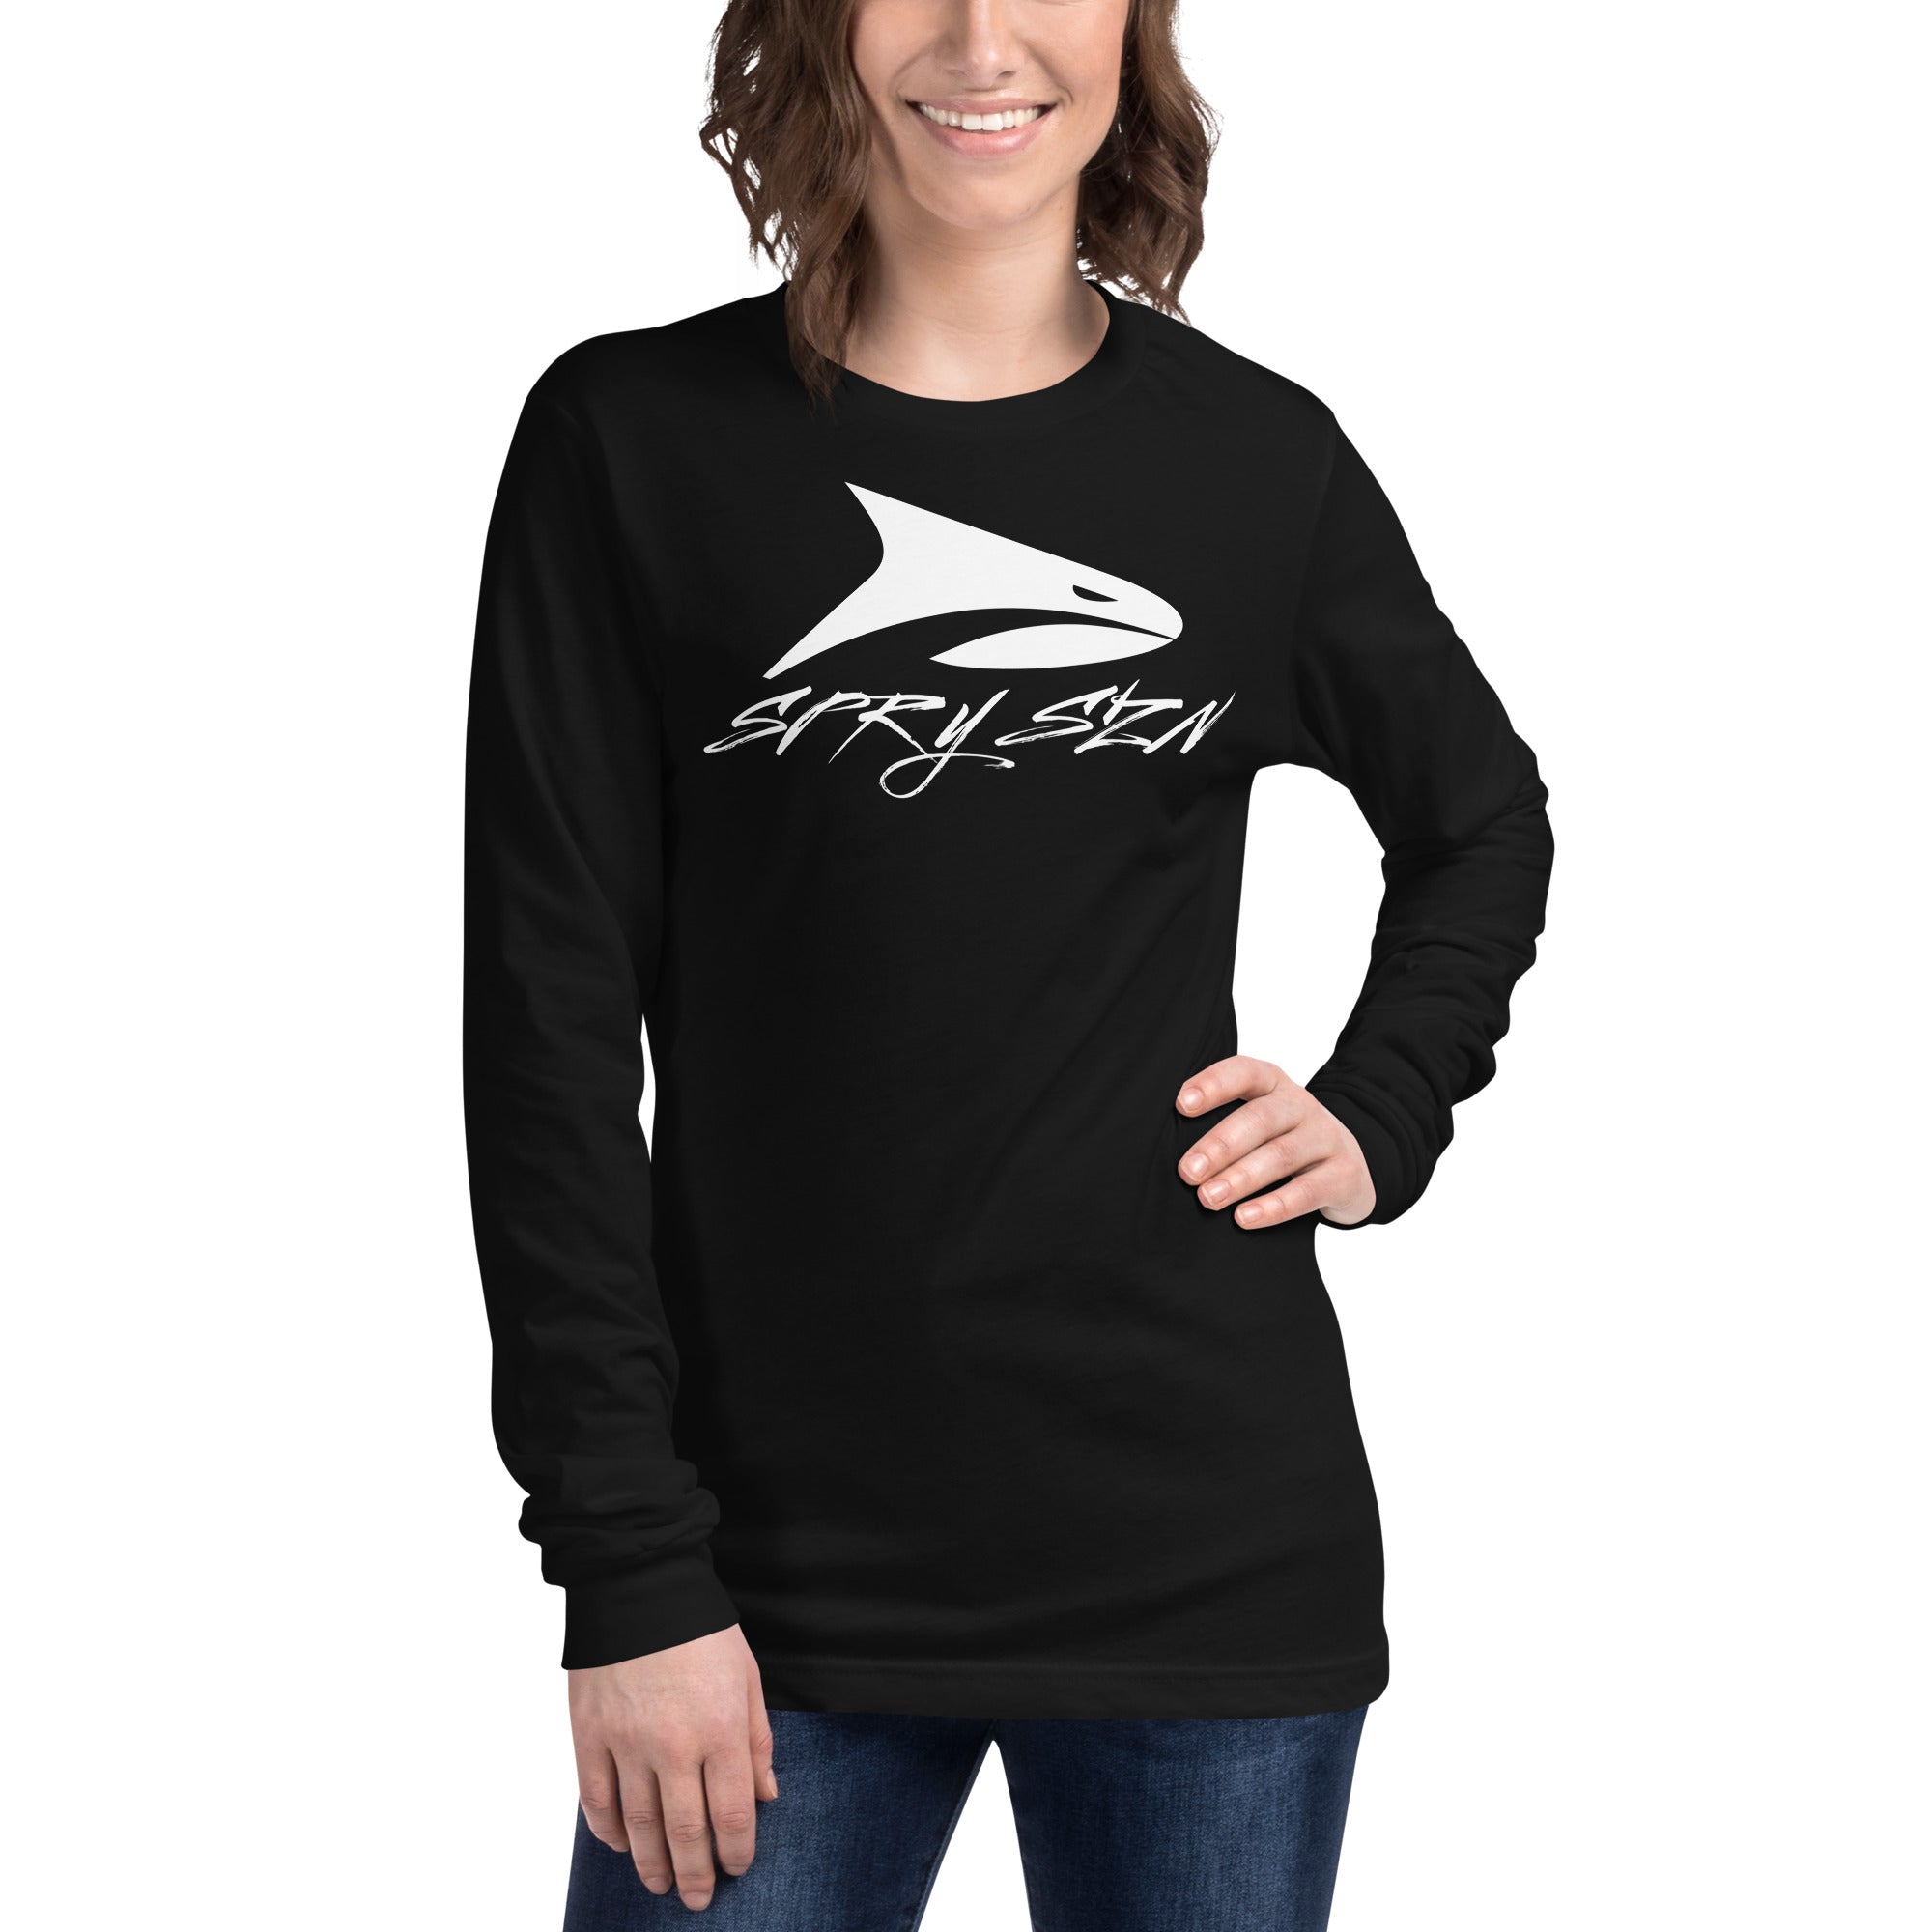 SPRY SZN White Shark Lightweight Long Sleeve Shirt